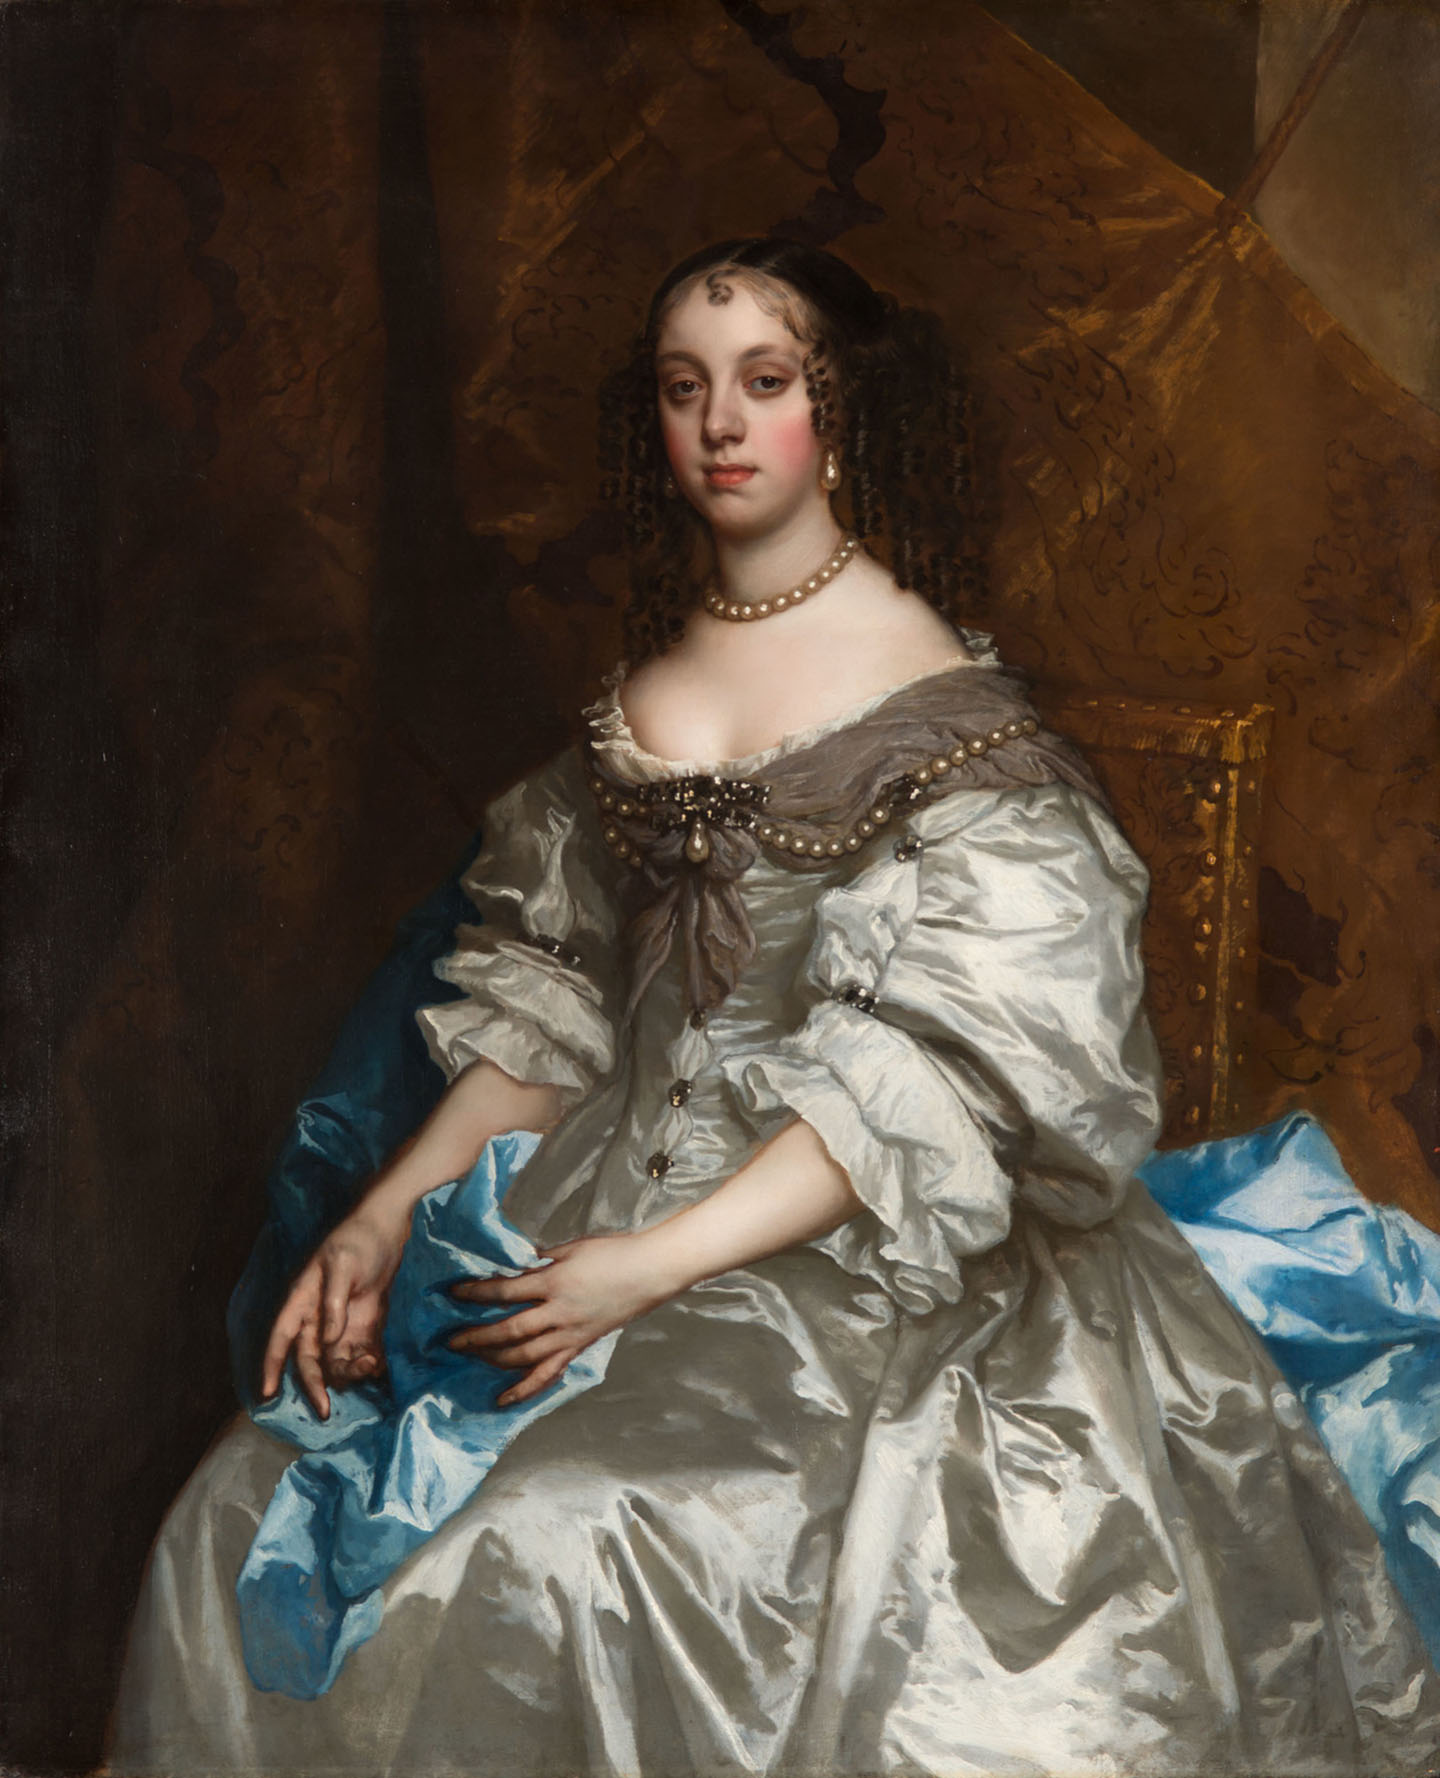 Bức chân dung hoàng hậu Catherine xứ Braganza, họa sỹ Peter Lely, từ năm 1663 đến năm 1665. Tranh sơn dầu trên vải canvas; kích thước: 49 3/10 inch x 40 2/5 inch. Bộ sưu tập Hoàng gia, Vương quốc Anh. (Ảnh: Tư liệu công cộng)